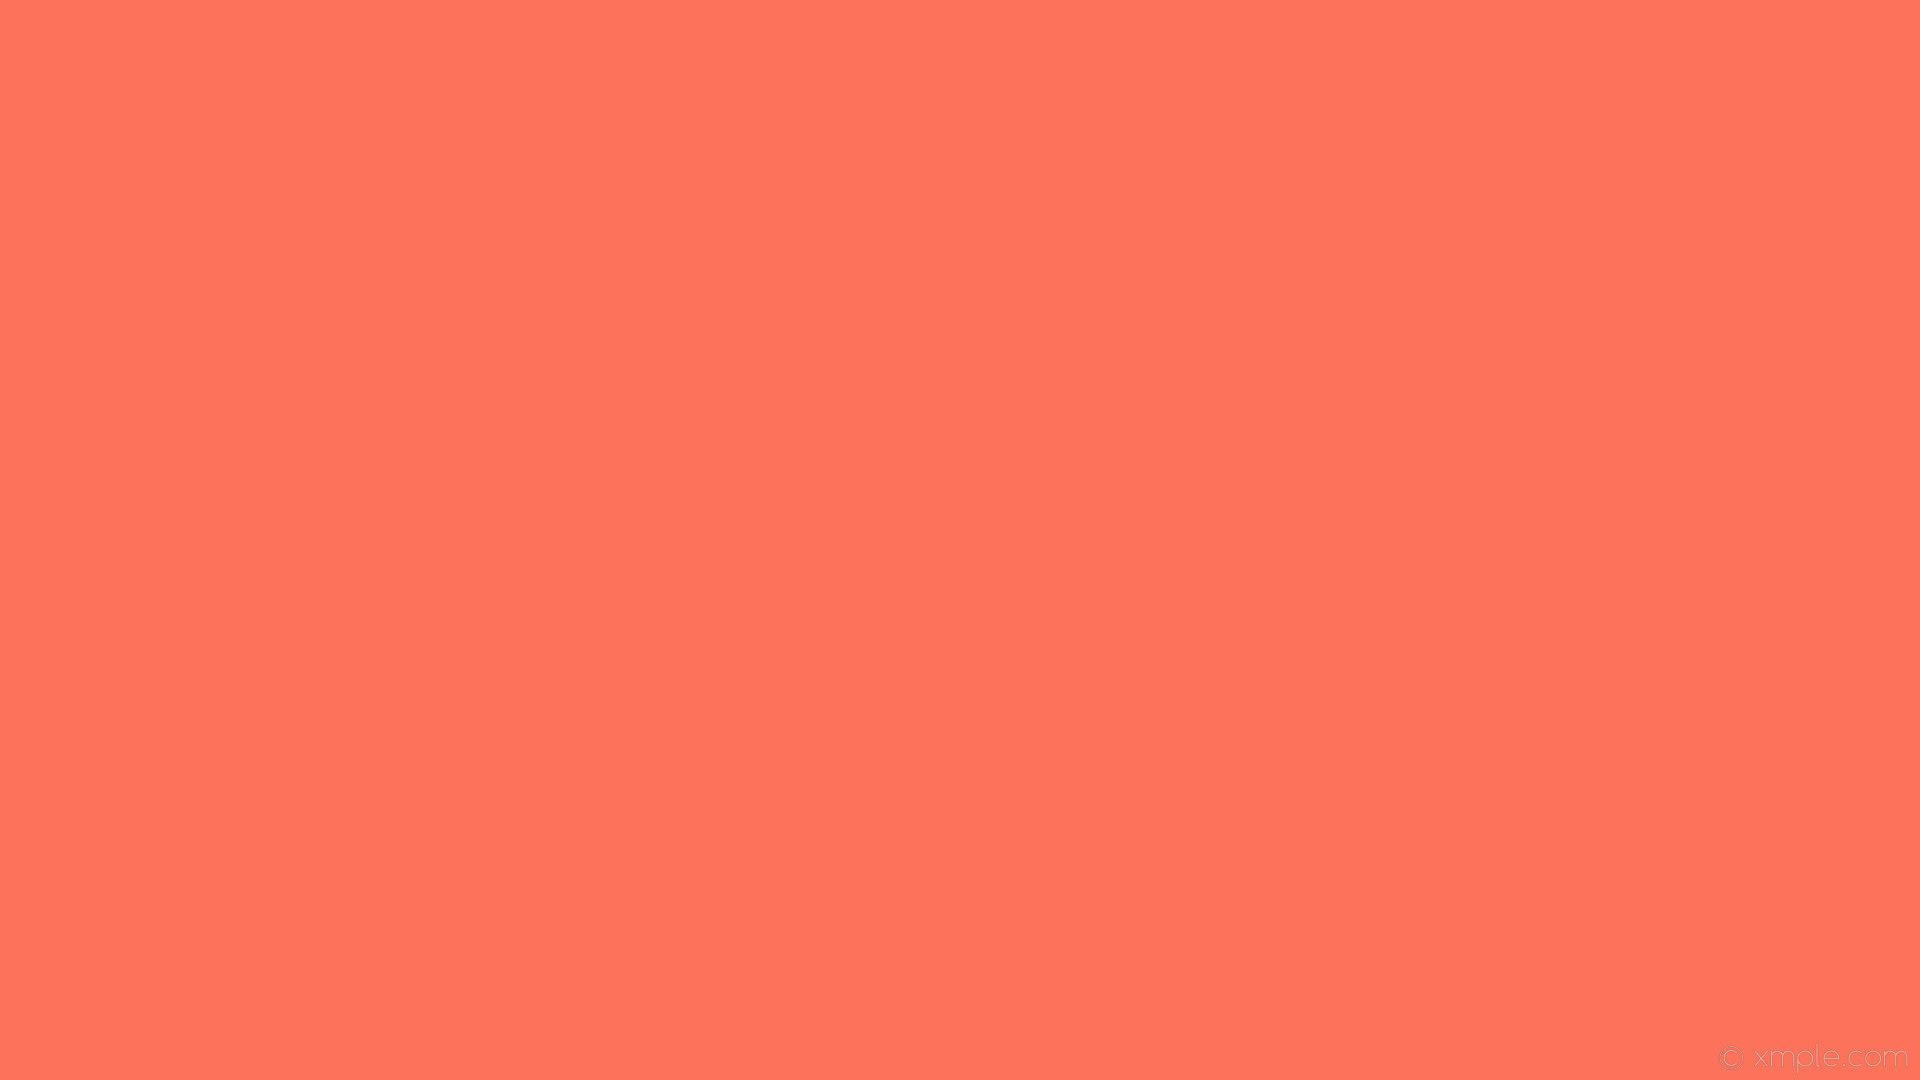 Fondosencillo De Color Coral En Alta Definición. Fondo de pantalla